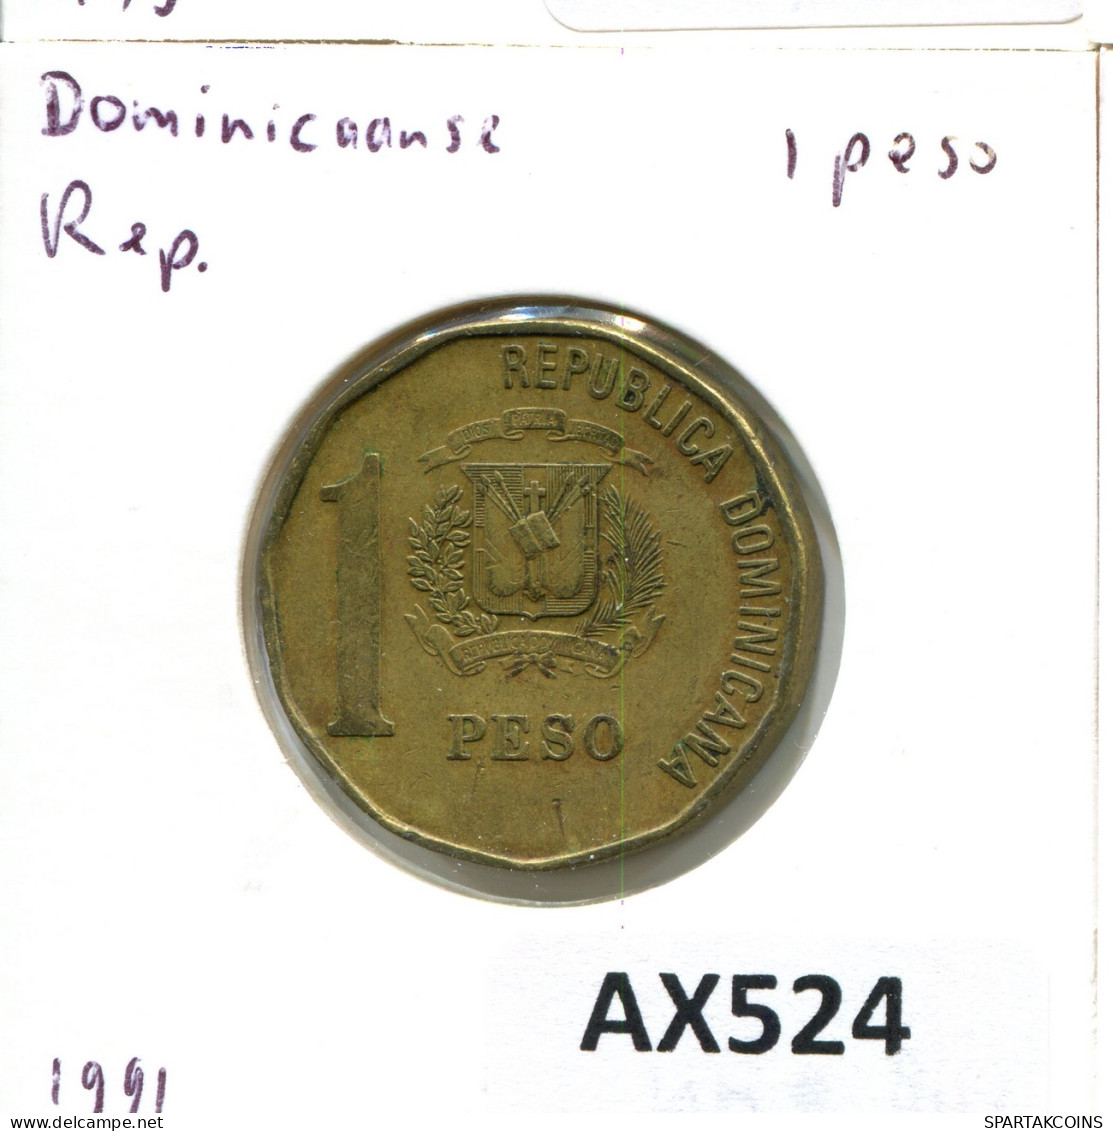 1 PESO 1991 DOMINICANA Coin #AX524.U - Dominikanische Rep.